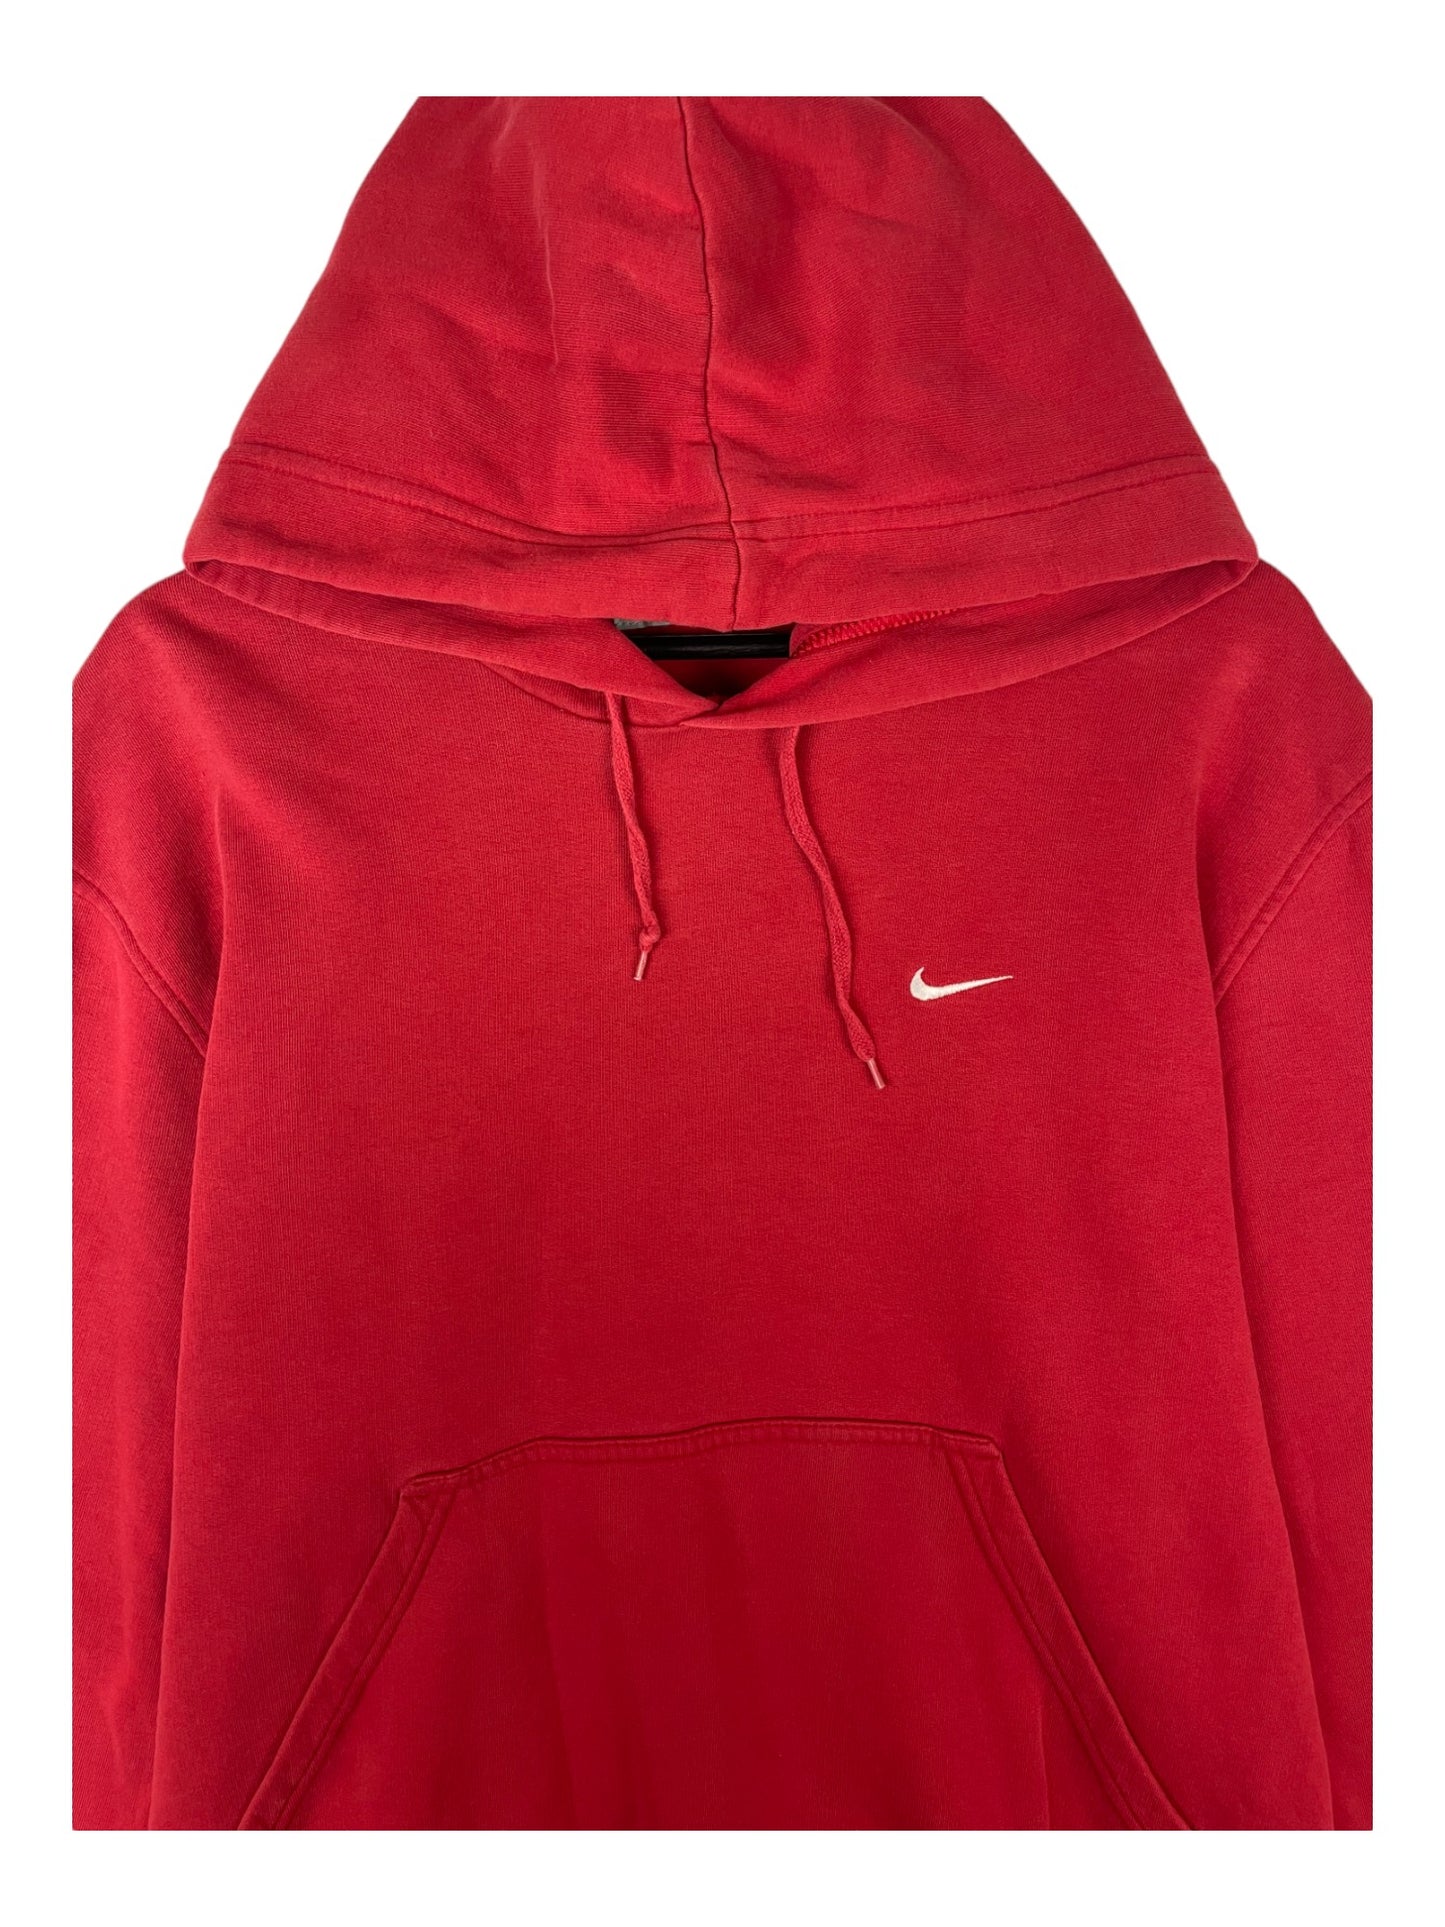 Nike Red Hoodie